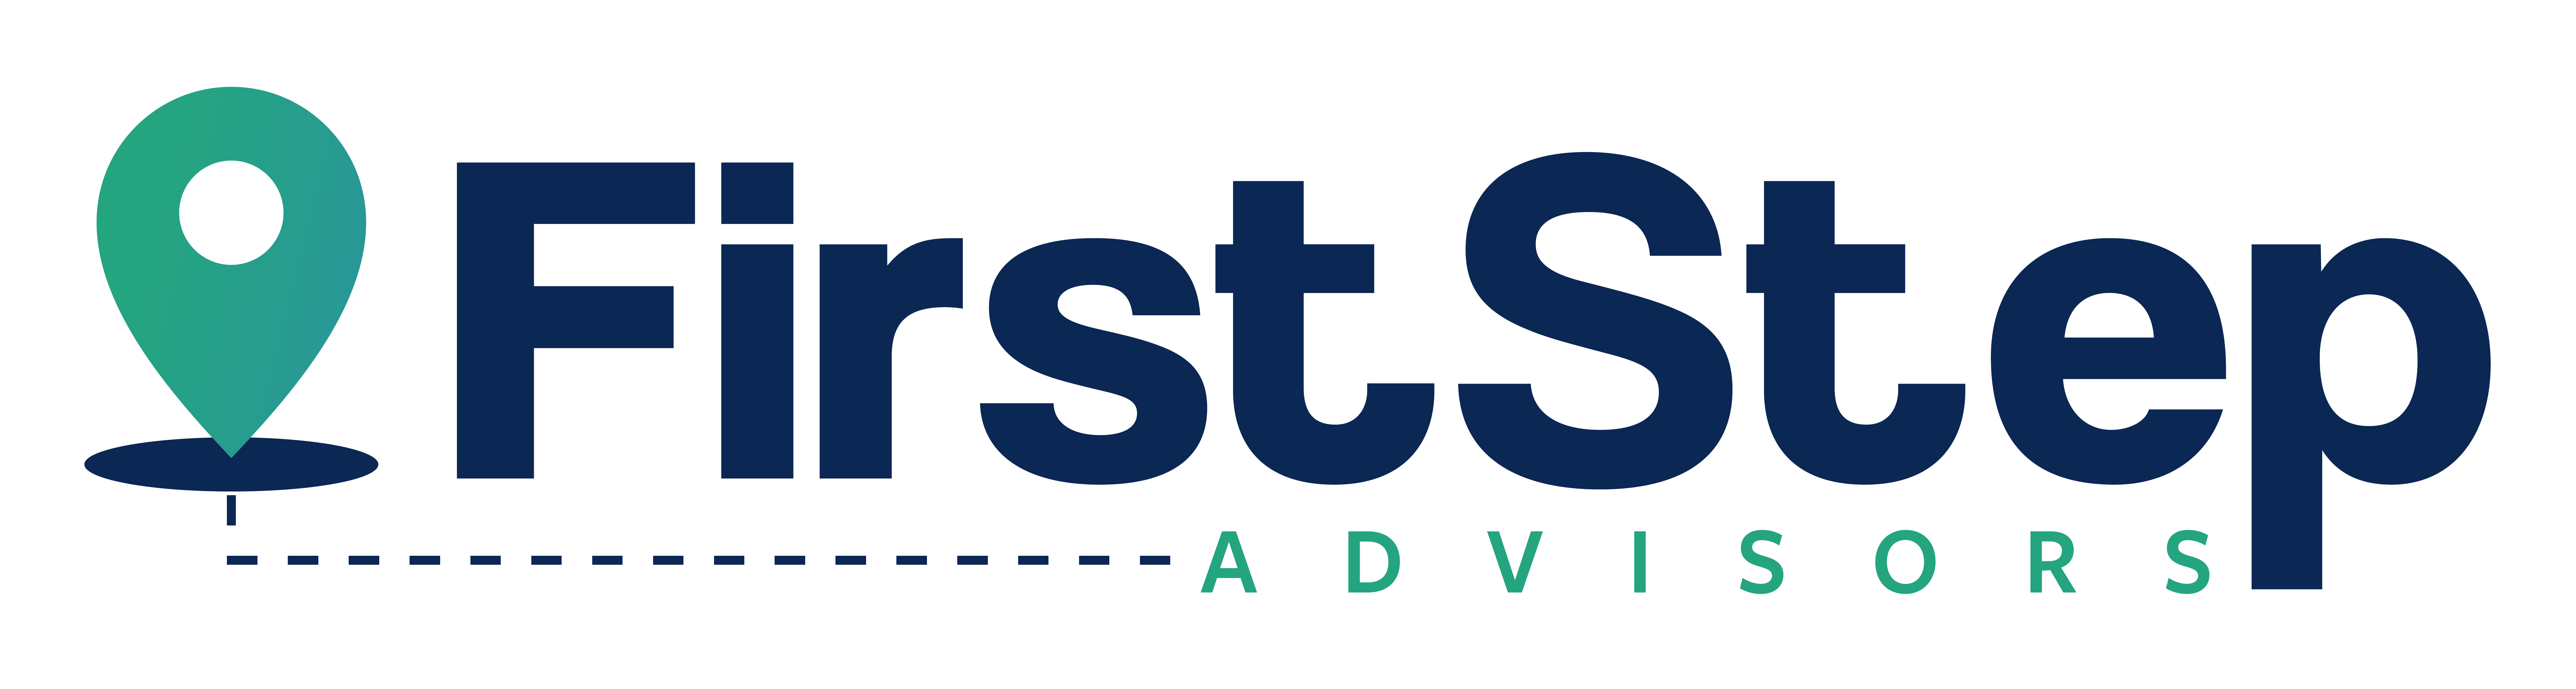 1_FIRST STEP ADVISORS_v4-01 Primary (Standard)